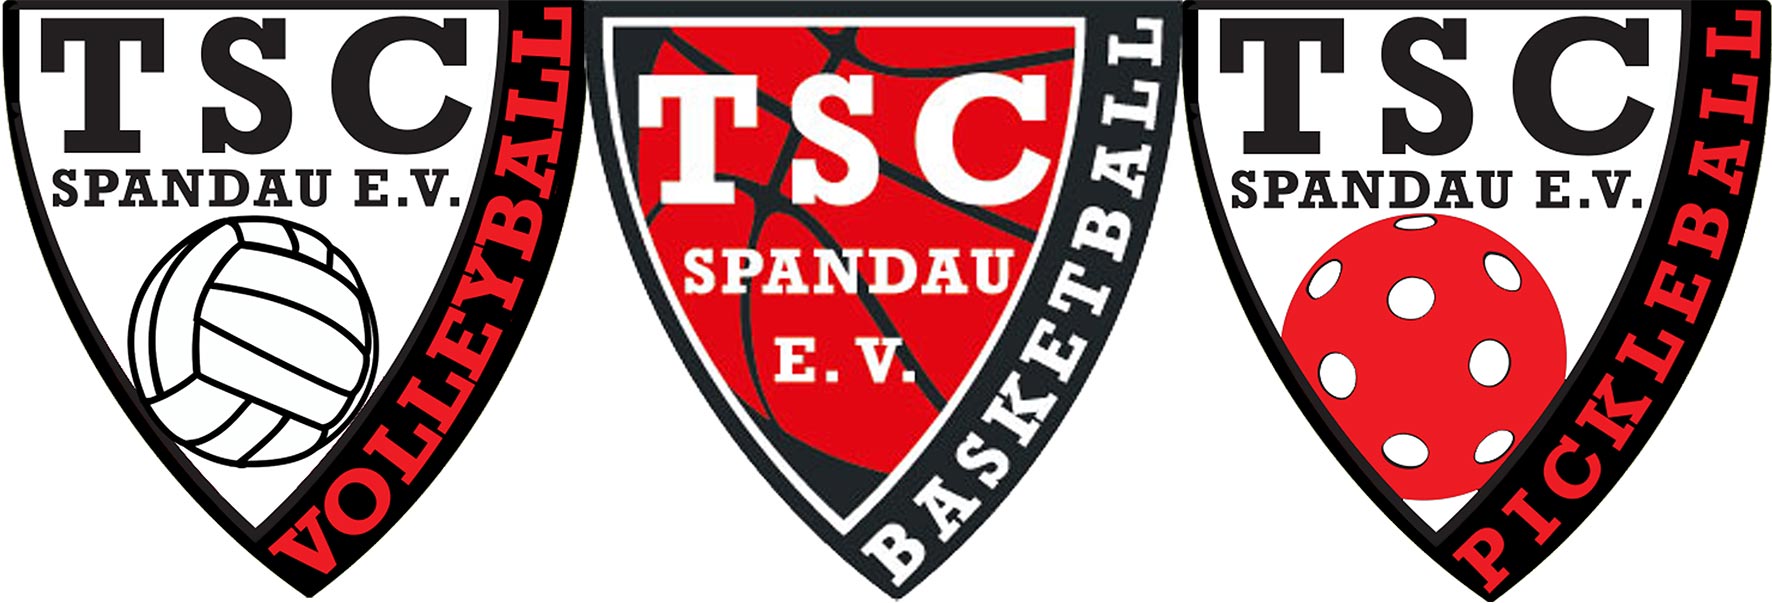 TSC Spandau